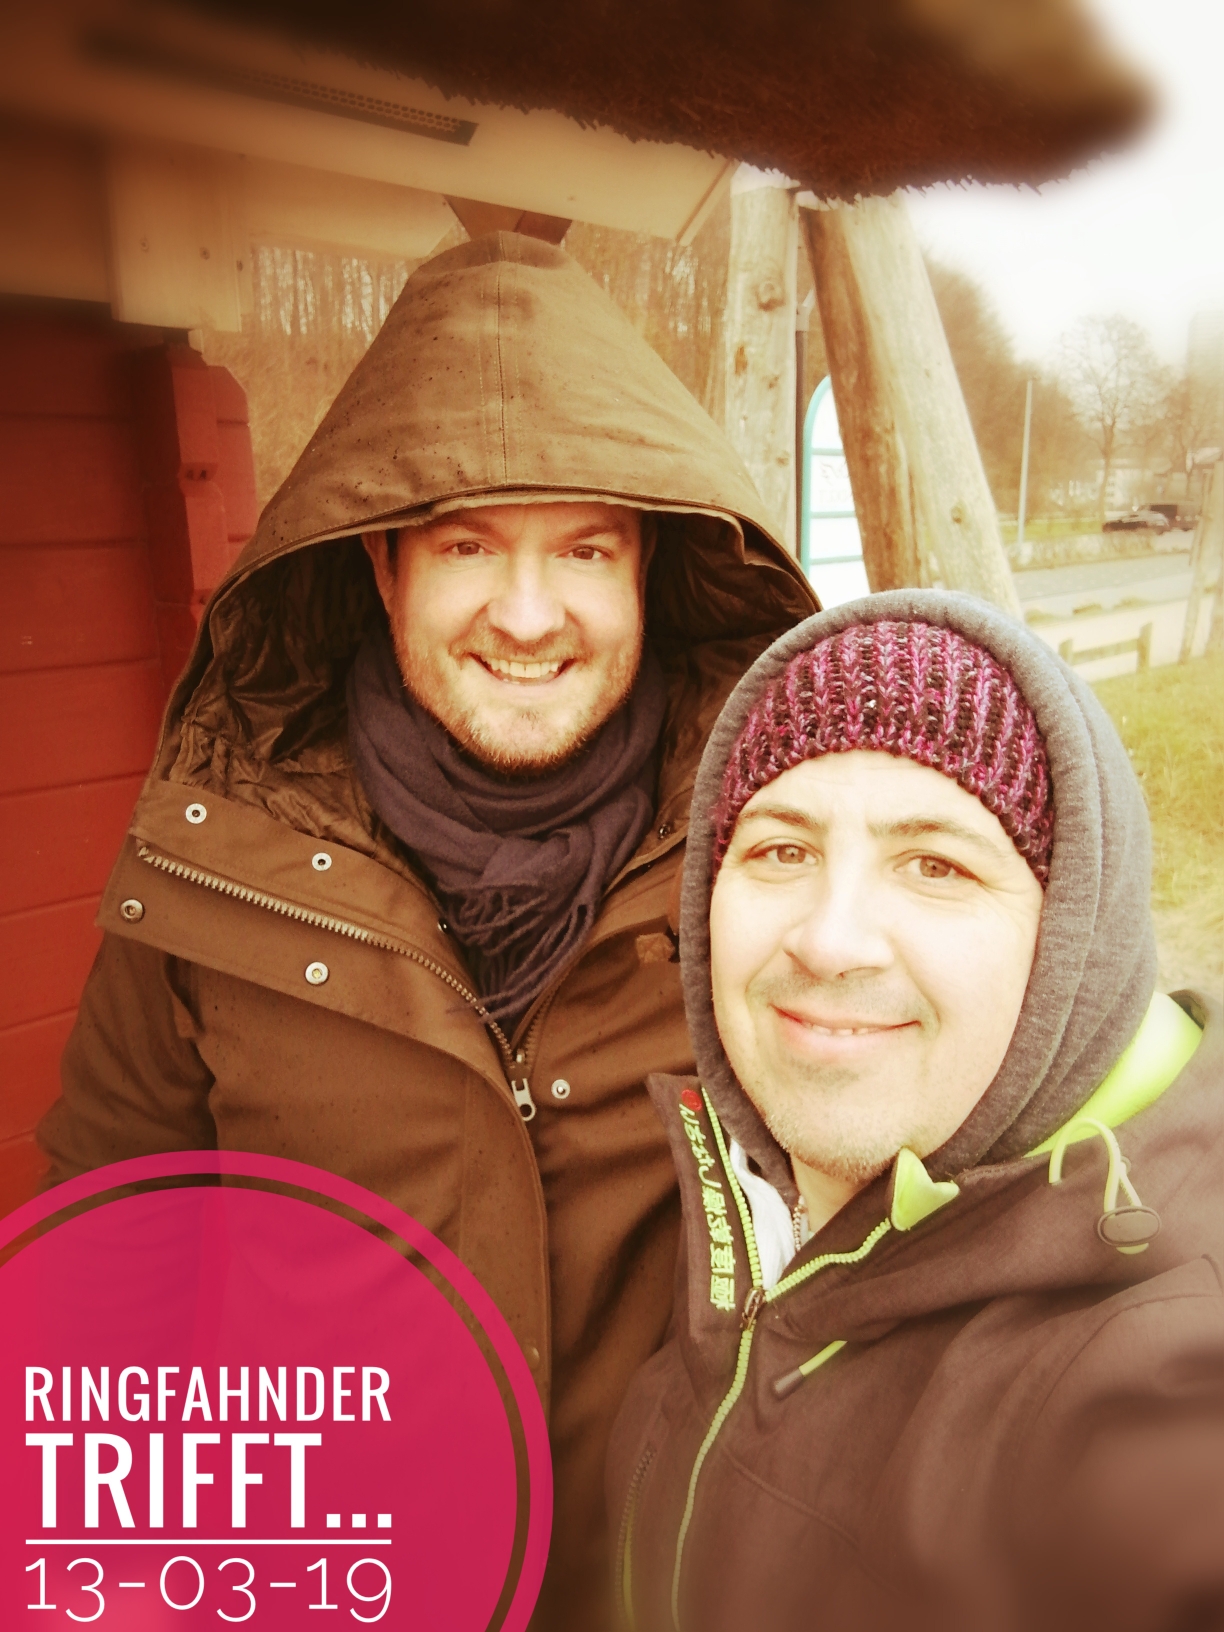 Ringfahnder bei Schöneberger Magazin!